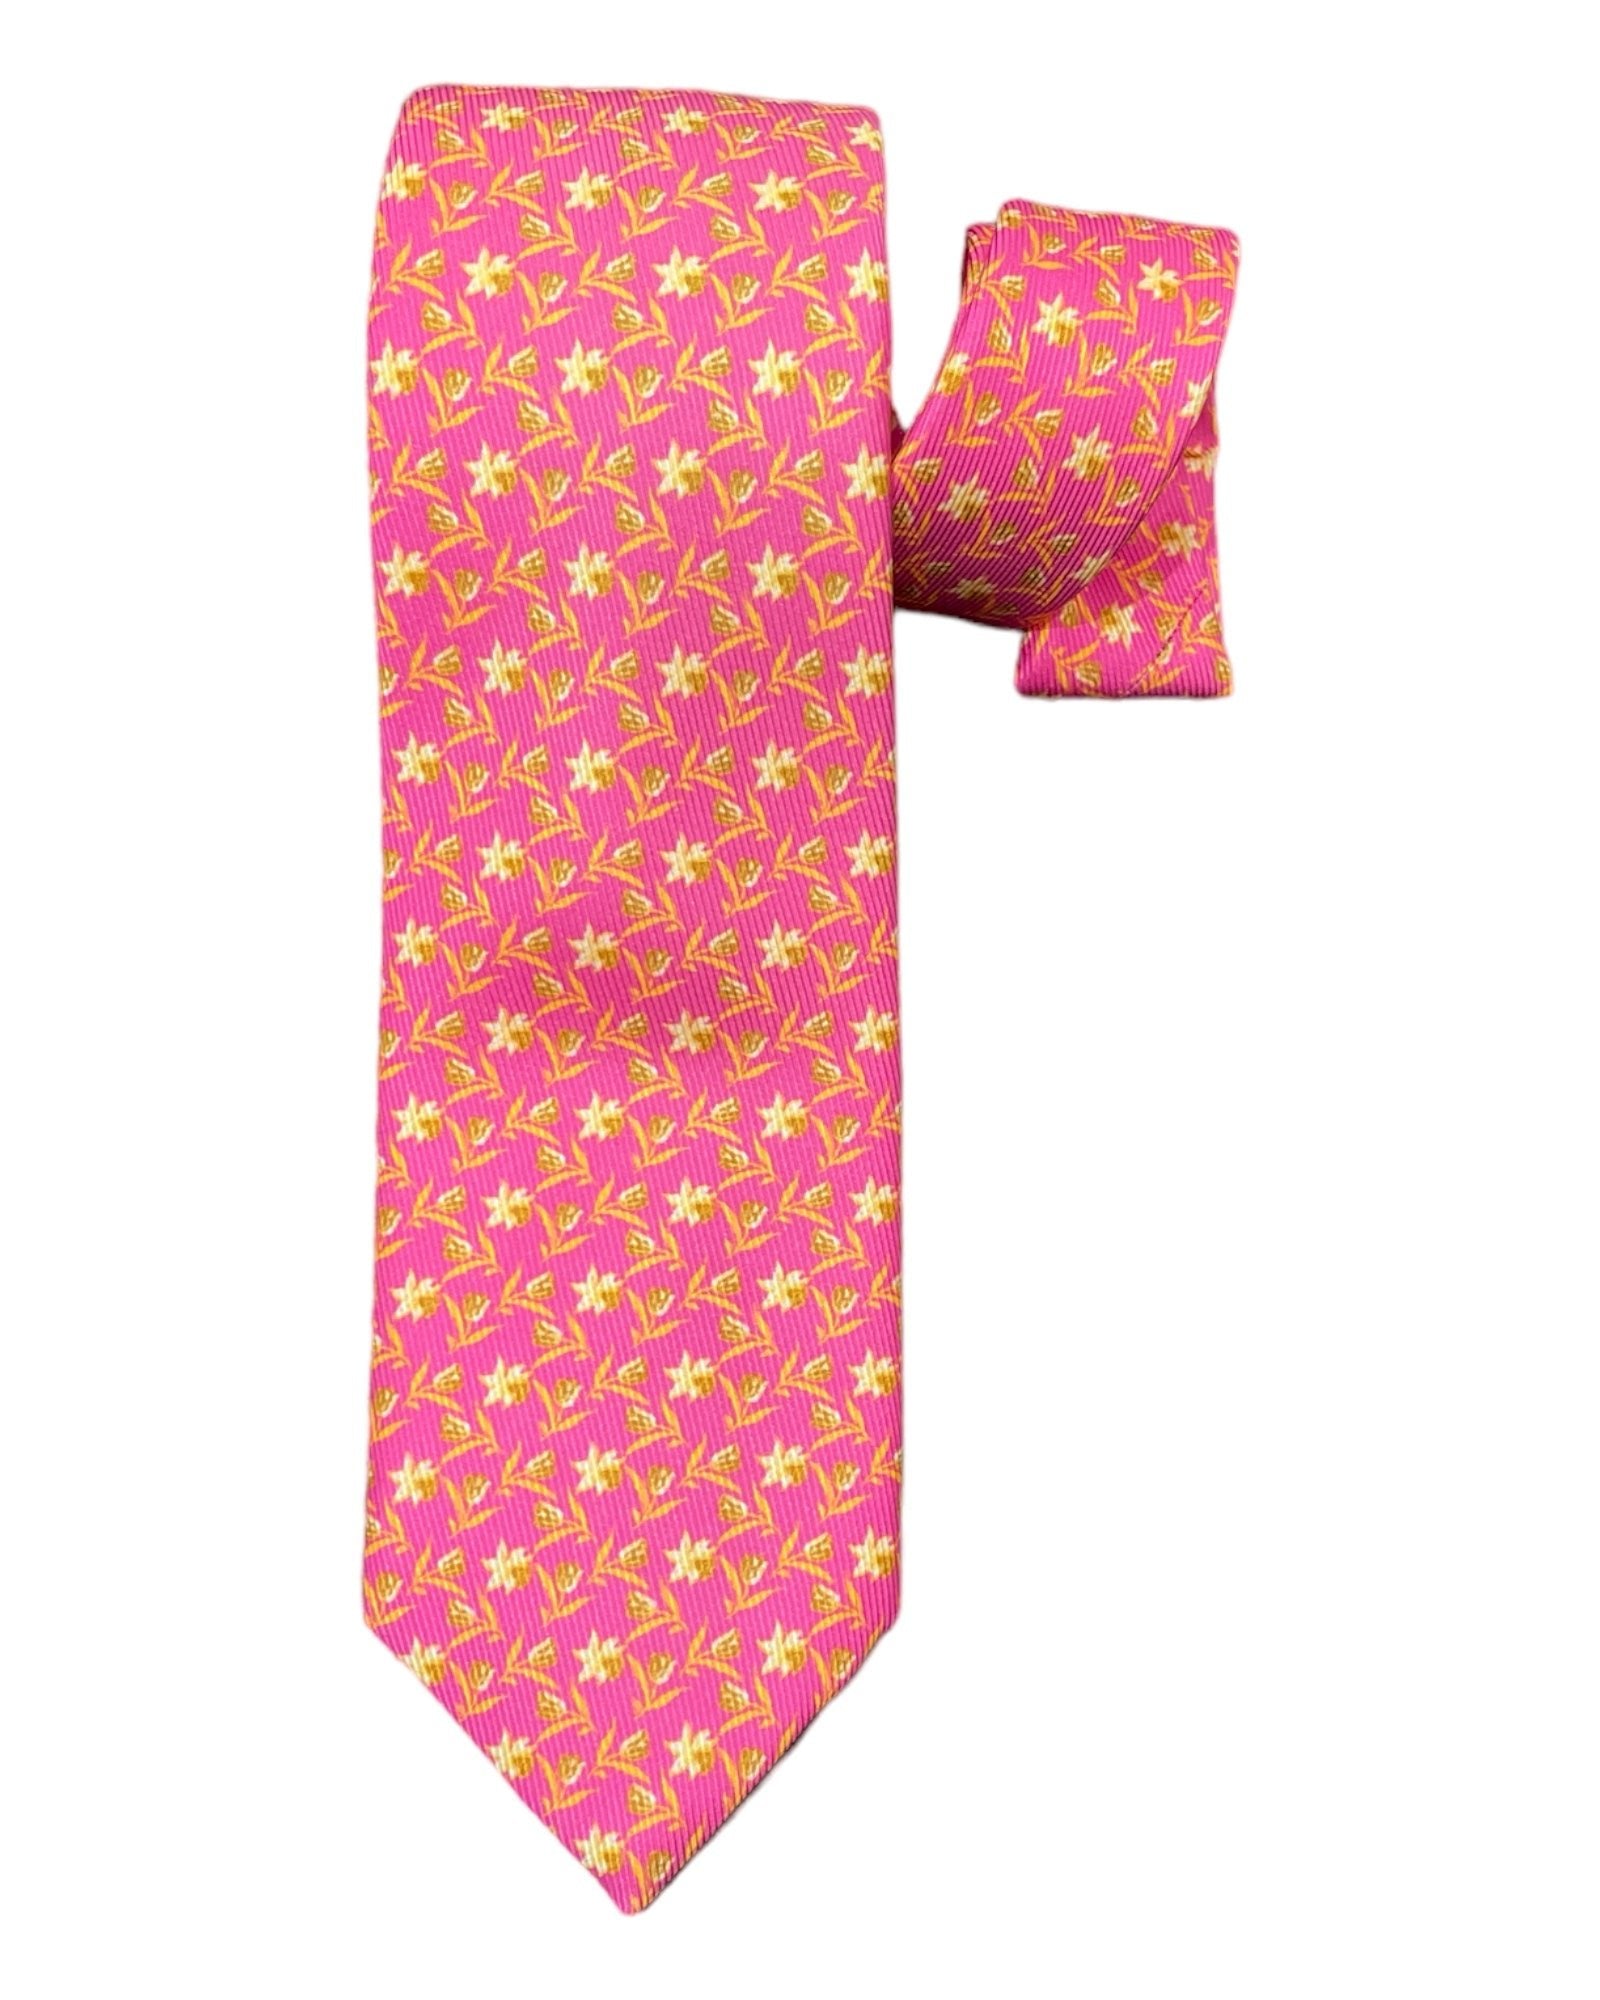 Floral Print 7F Silk Tie - Pink/Beige TIES &amp; BOWTIES